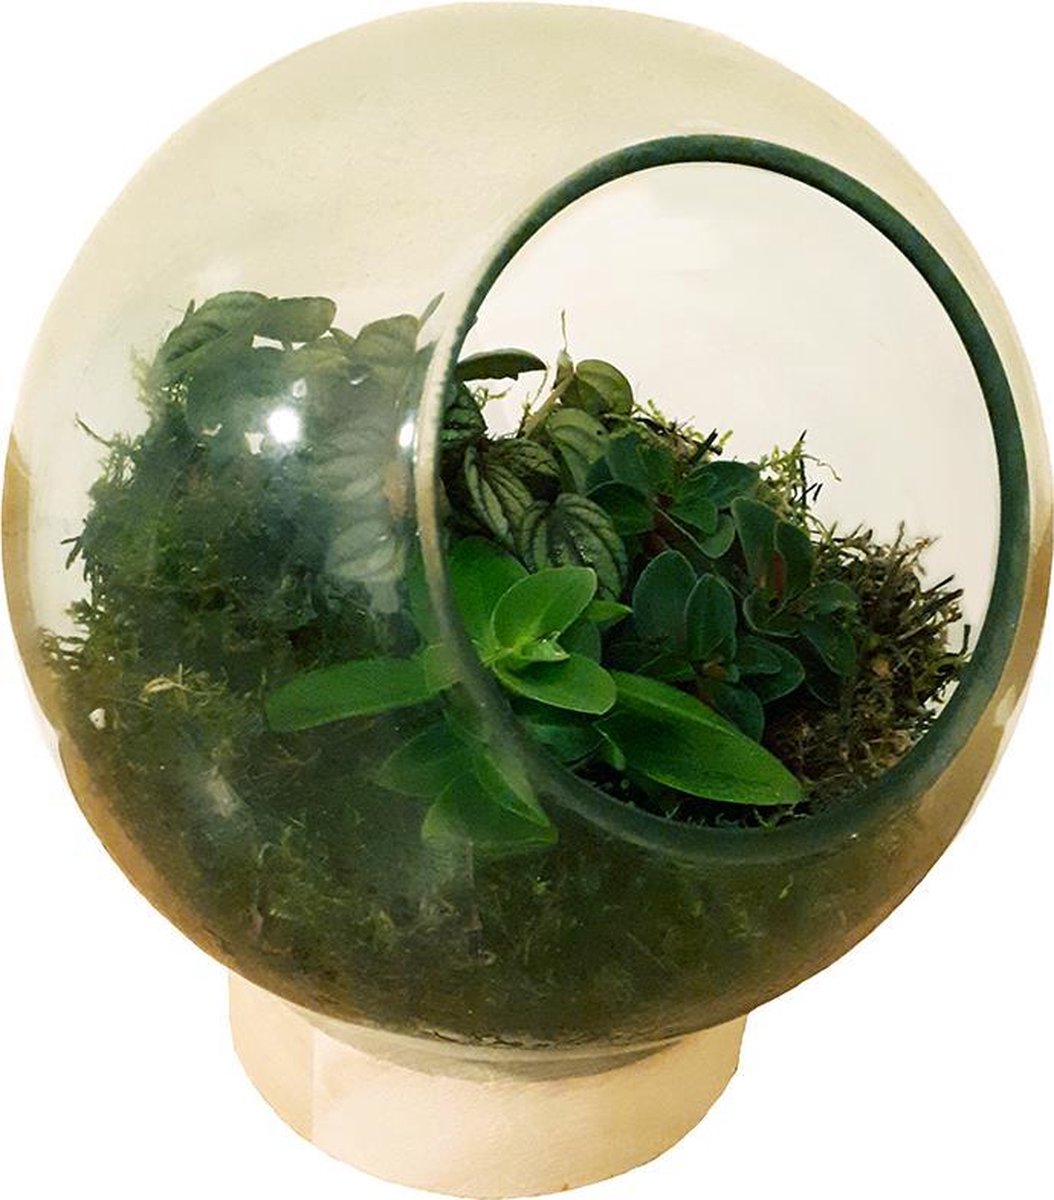 Glazen bol met 3 mini plantjes en mos. Ecosysteem voor planten. | bol.com